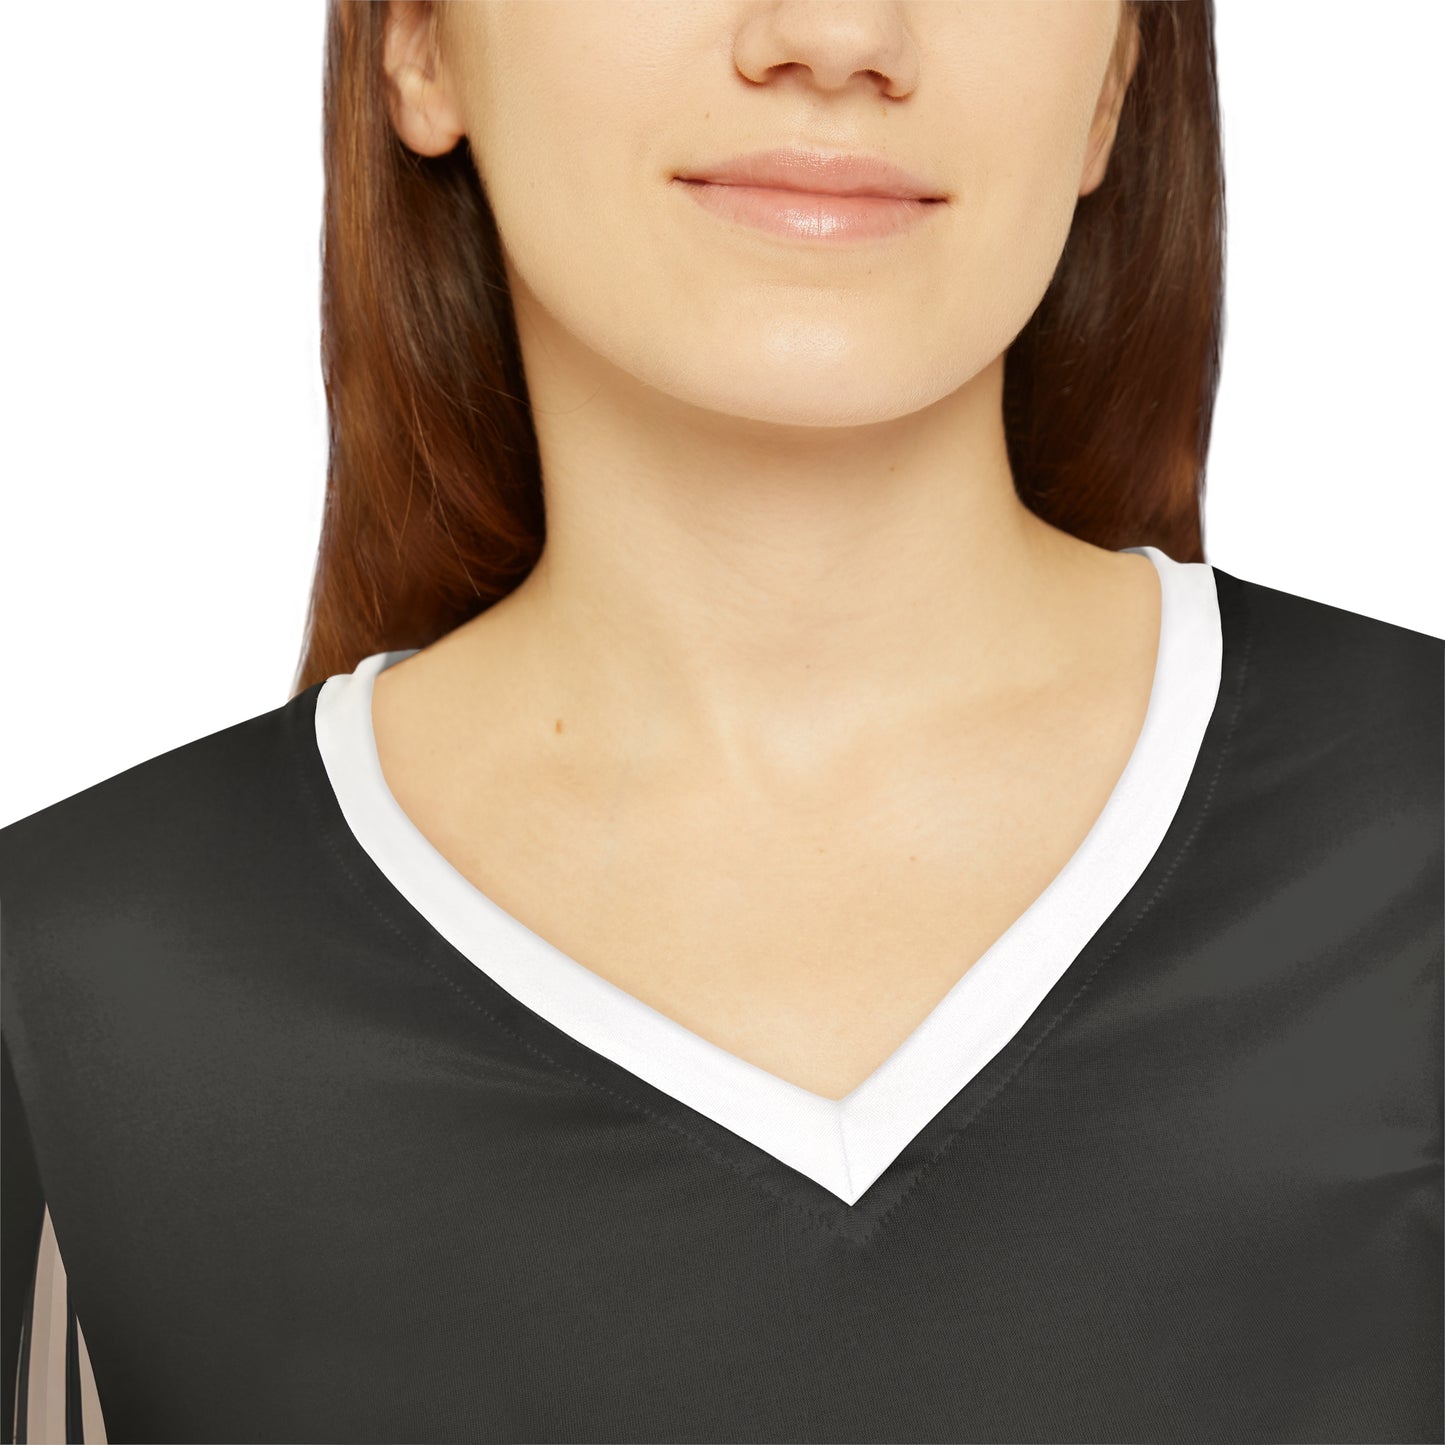 Lino Miles - Women's Long-Sleeve V-neck Shirt